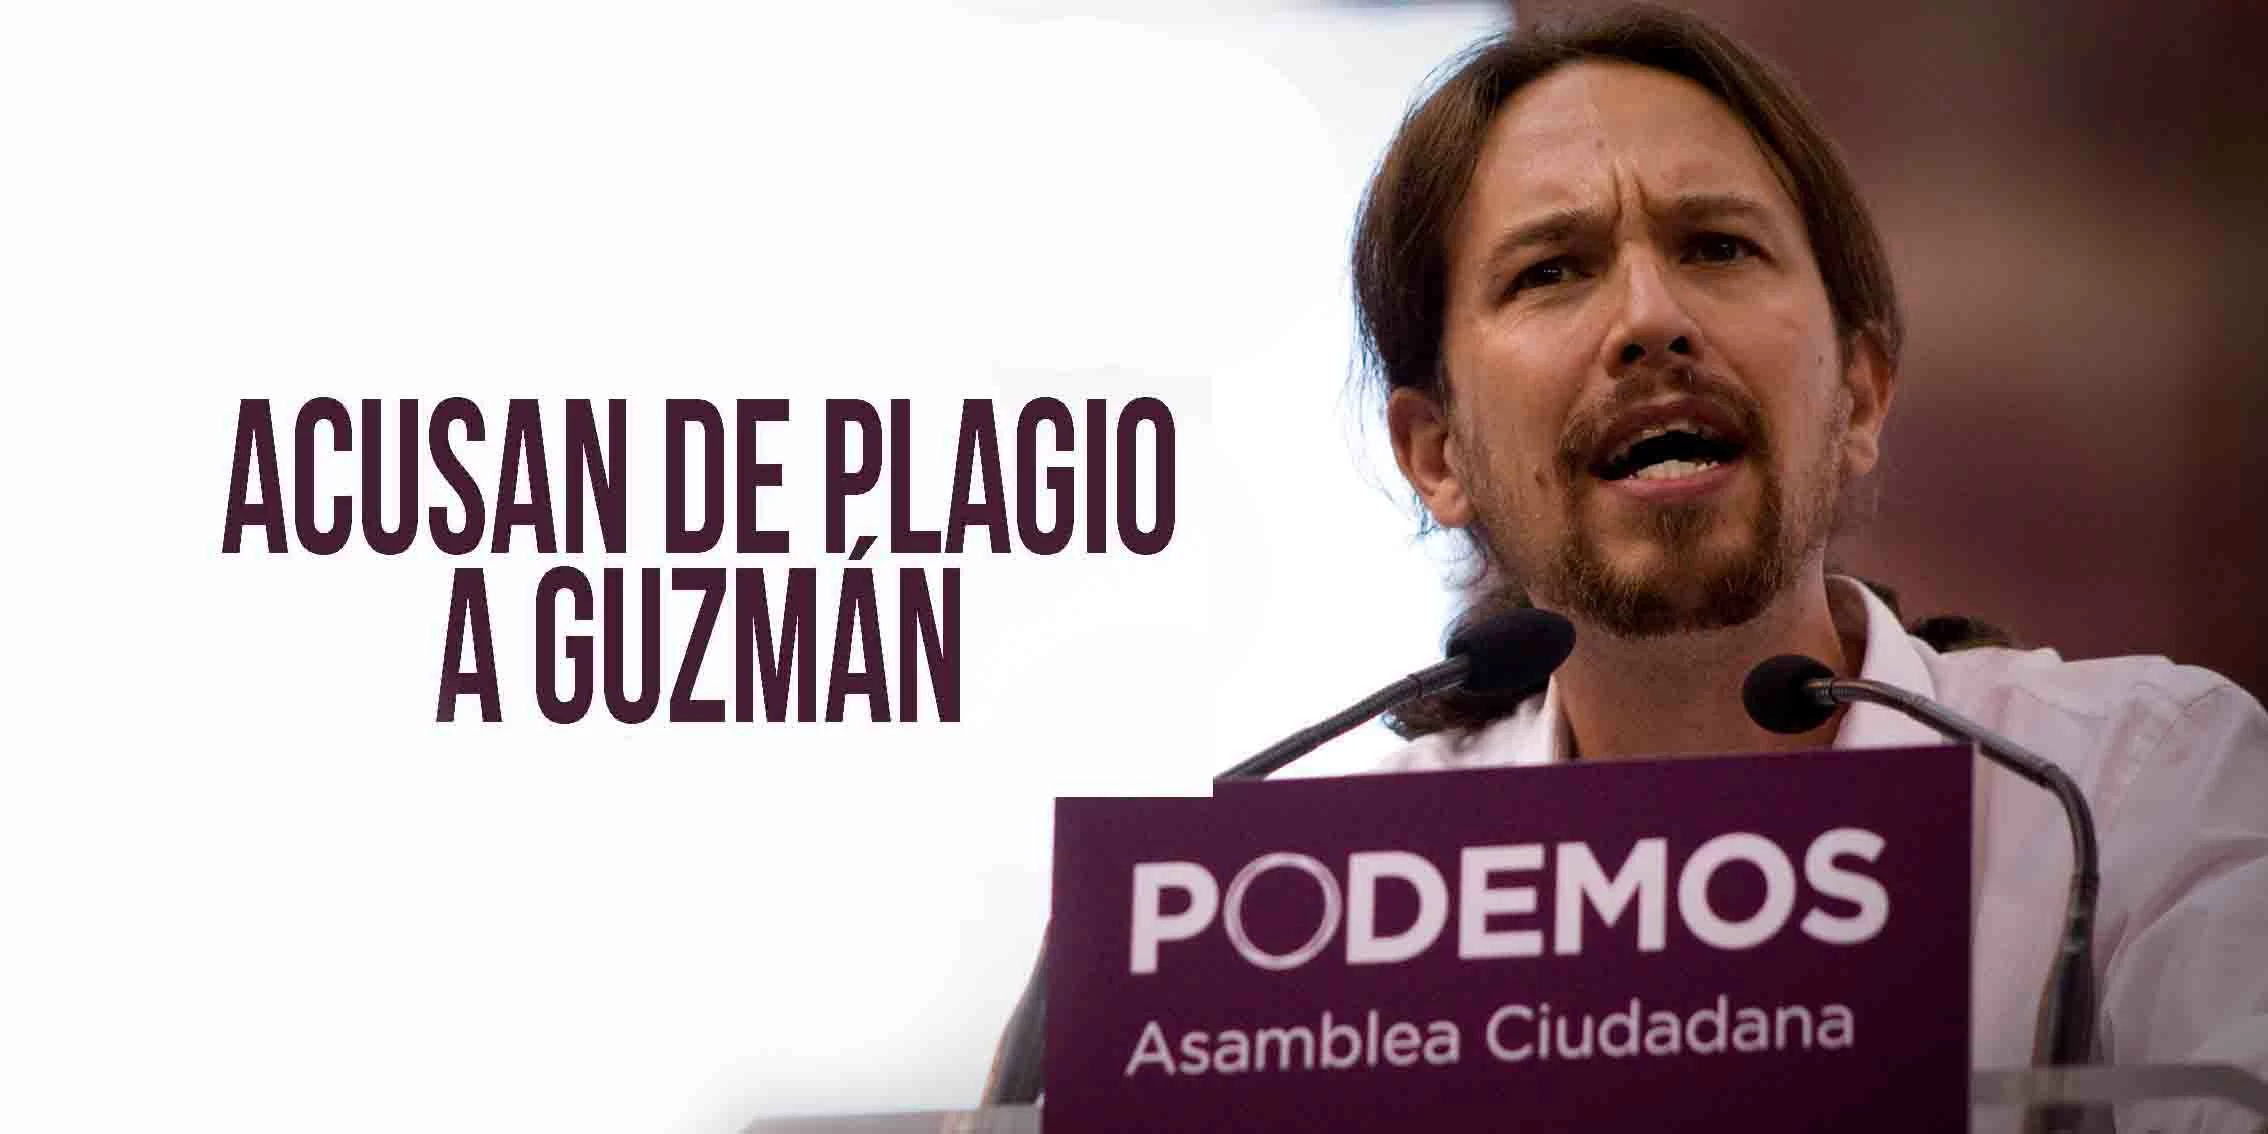 Podemos Acusa de Plagio a Guzmán